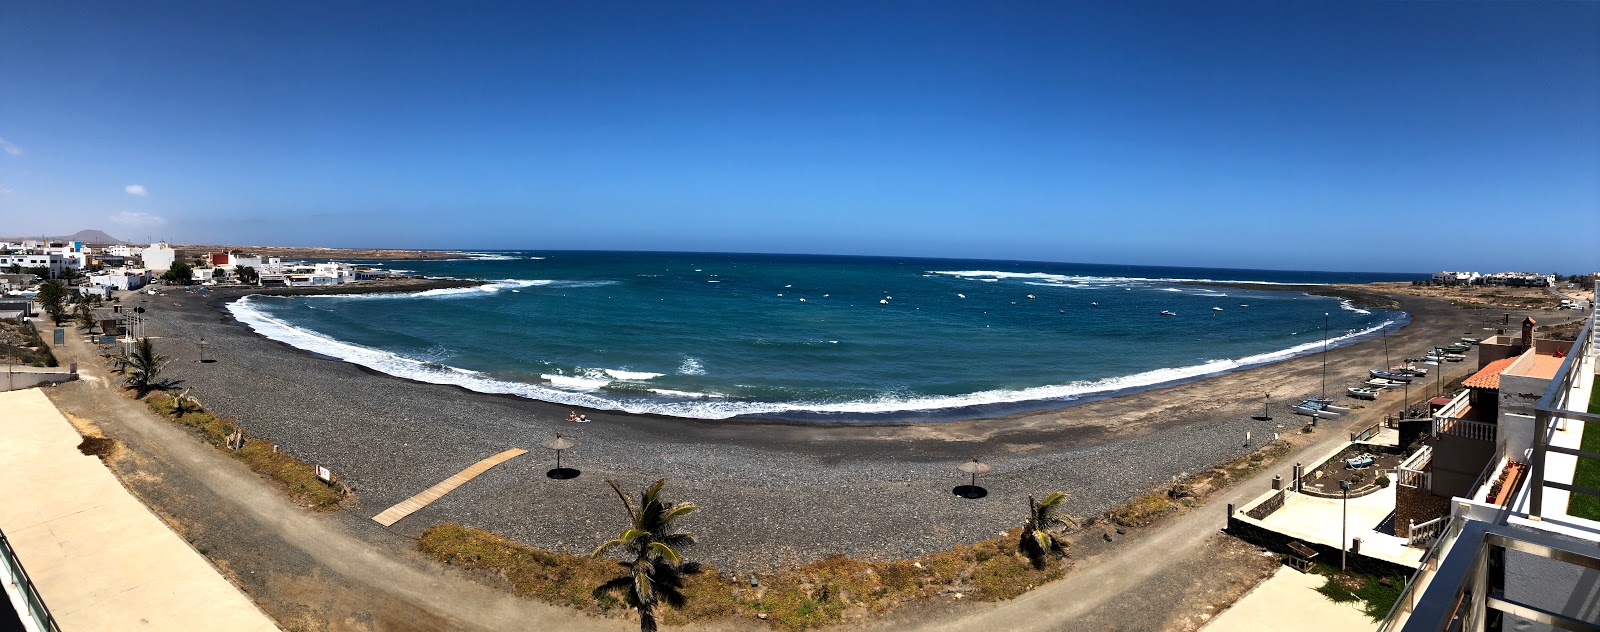 Zdjęcie Playa Las Lajas - popularne miejsce wśród znawców relaksu